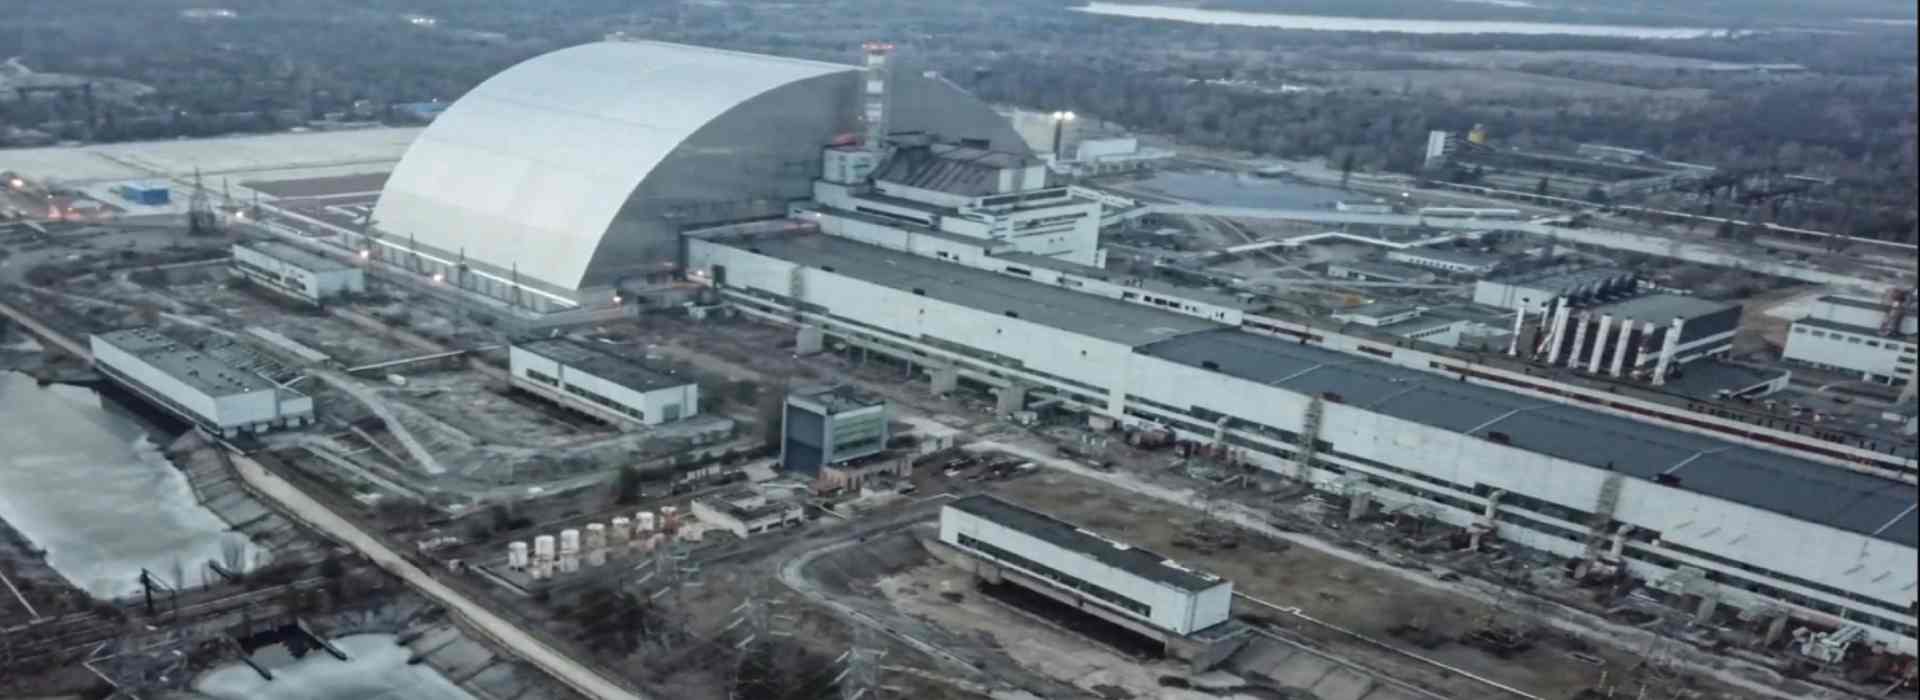 Chernobyl, la centrale nucleare senza corrente. Il pericolo radioattivo